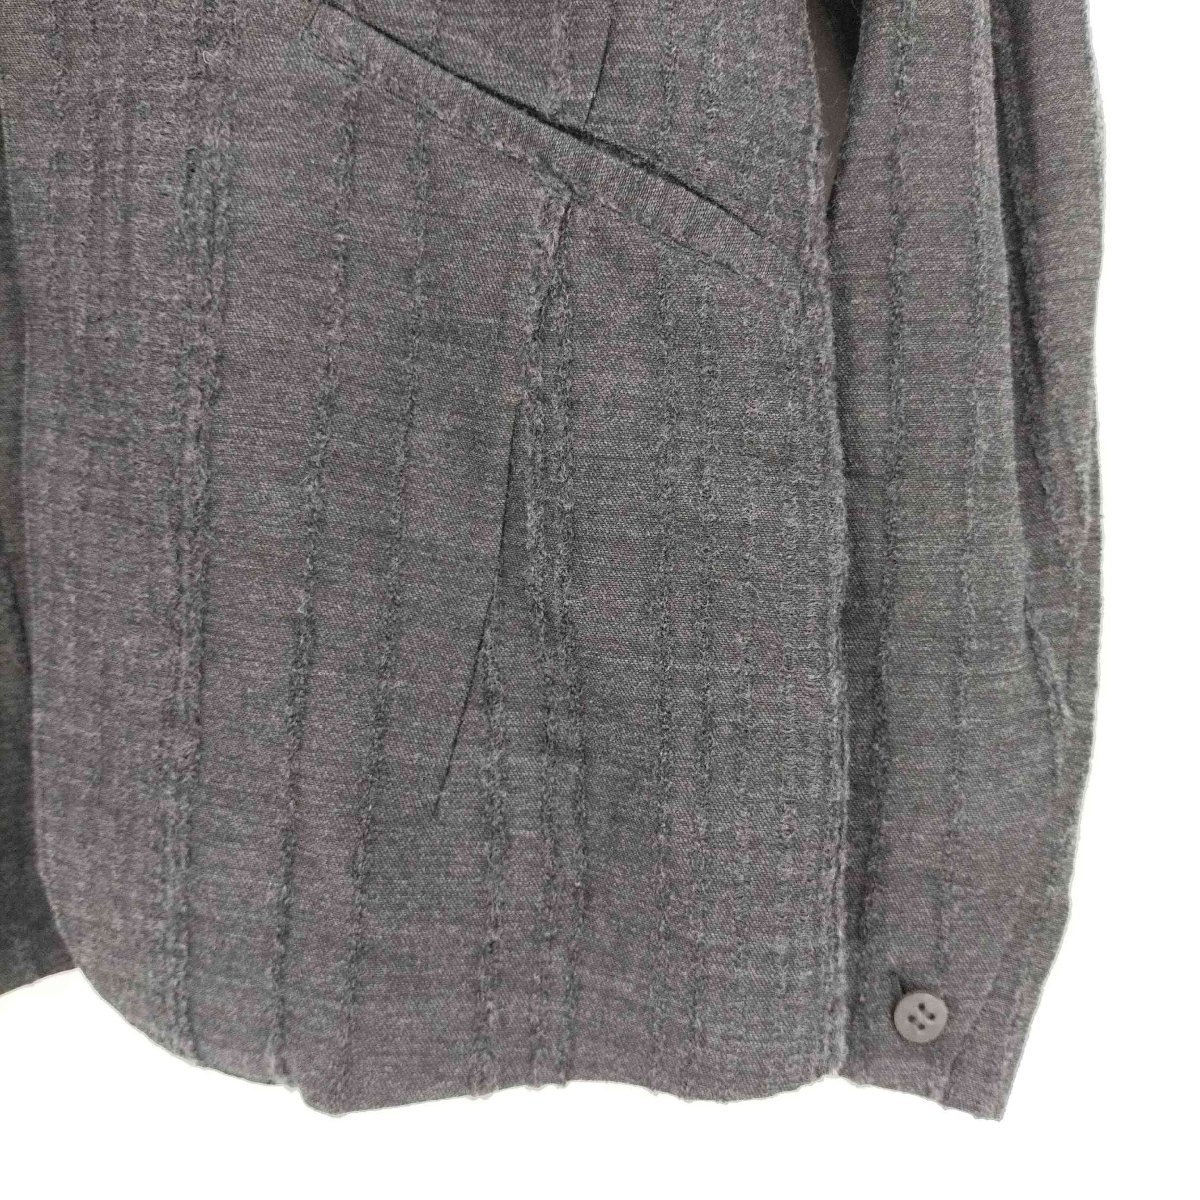 D.HYGEN(ディーハイゲン) Wool Rayon Jacquard stripe jacket ウー 中古 古着 0205_画像4